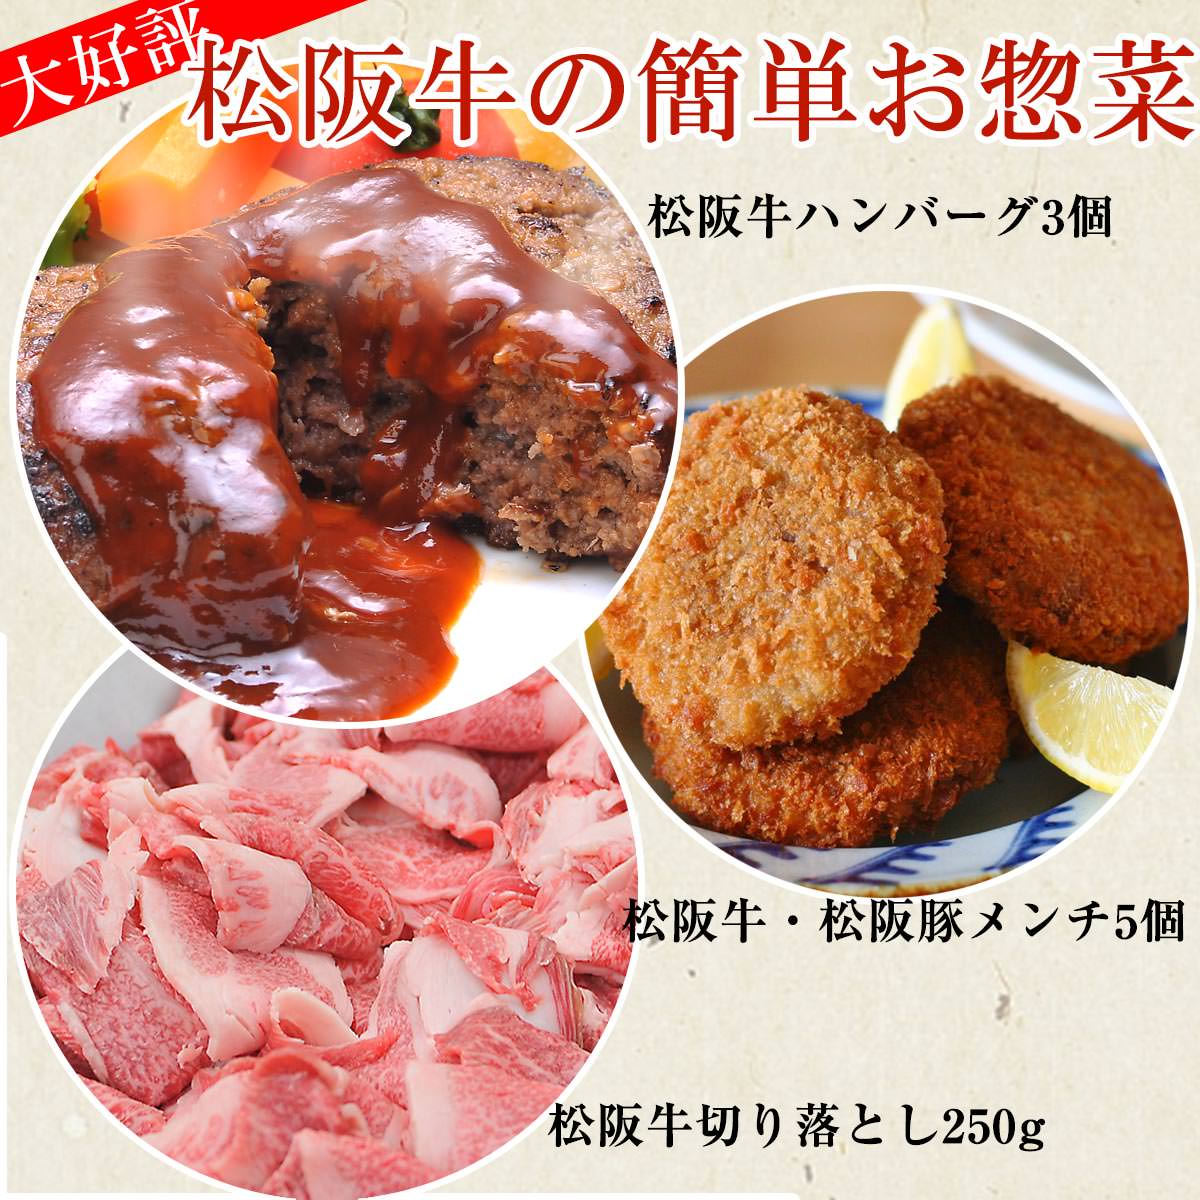  松阪牛お惣菜デラックスセット